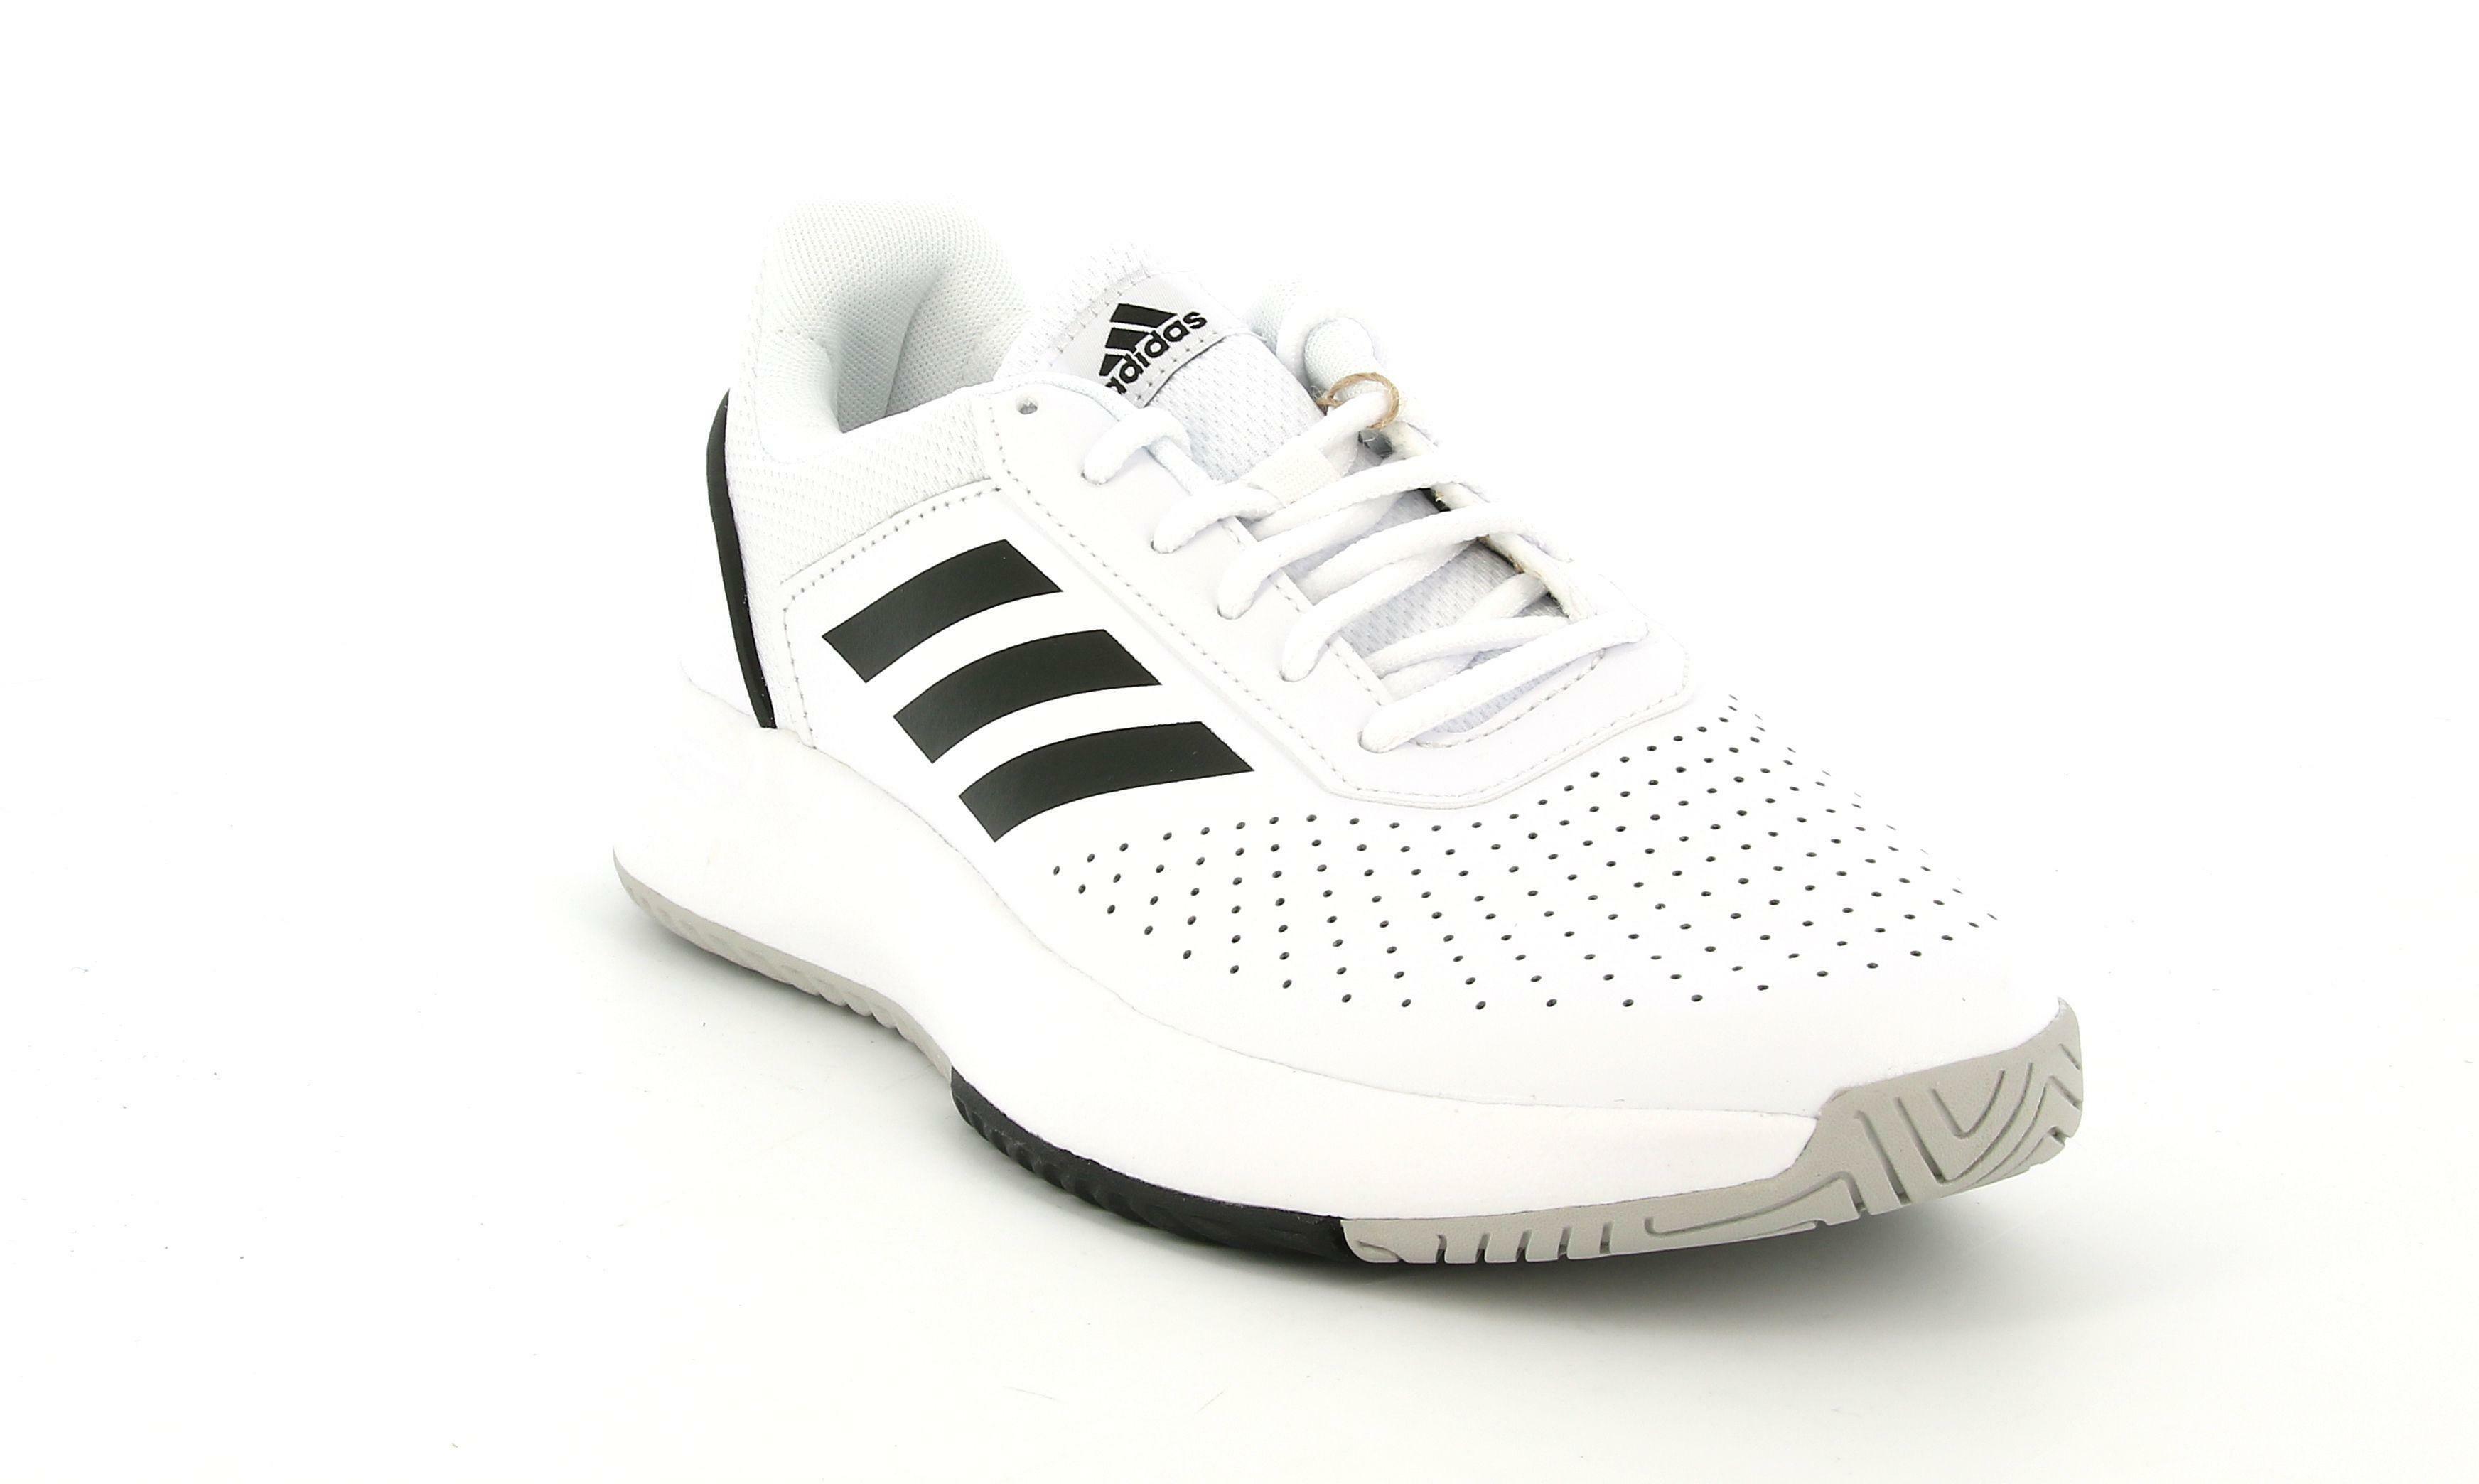 Adidas courtsmash scarpe da tennis uomo f36718 موقع دله